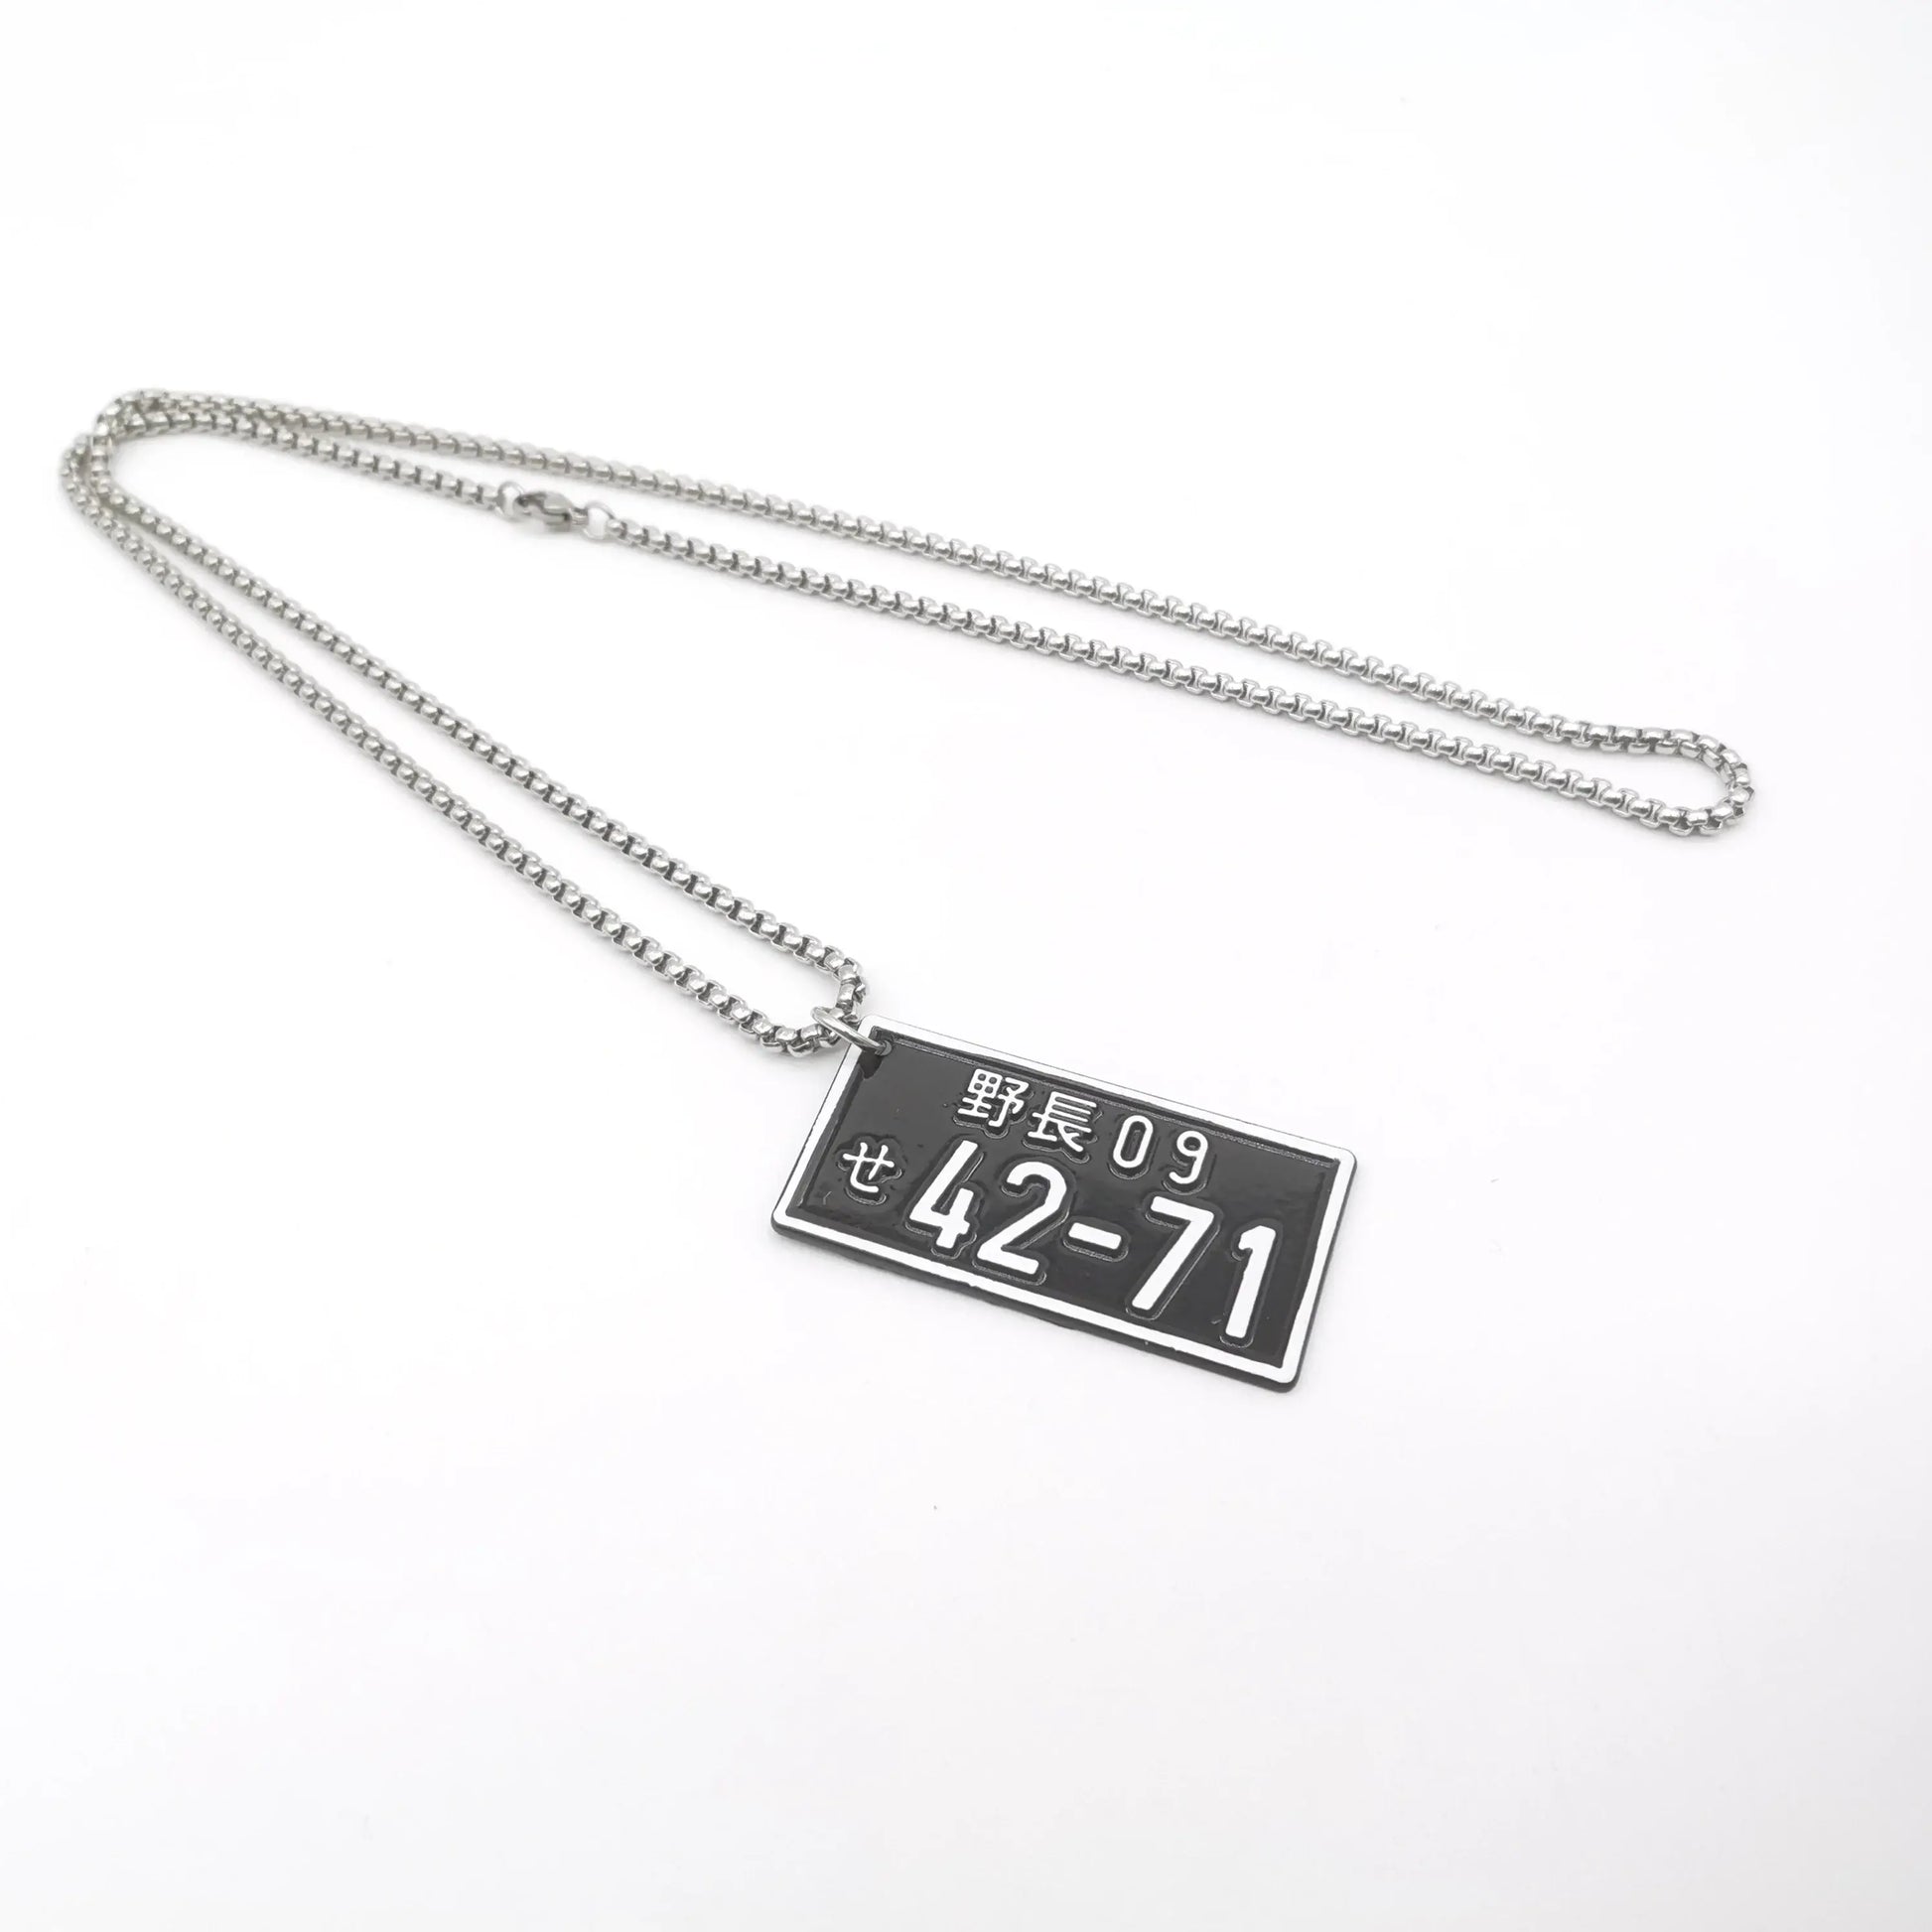 42 - 71 JDM Plate Necklace